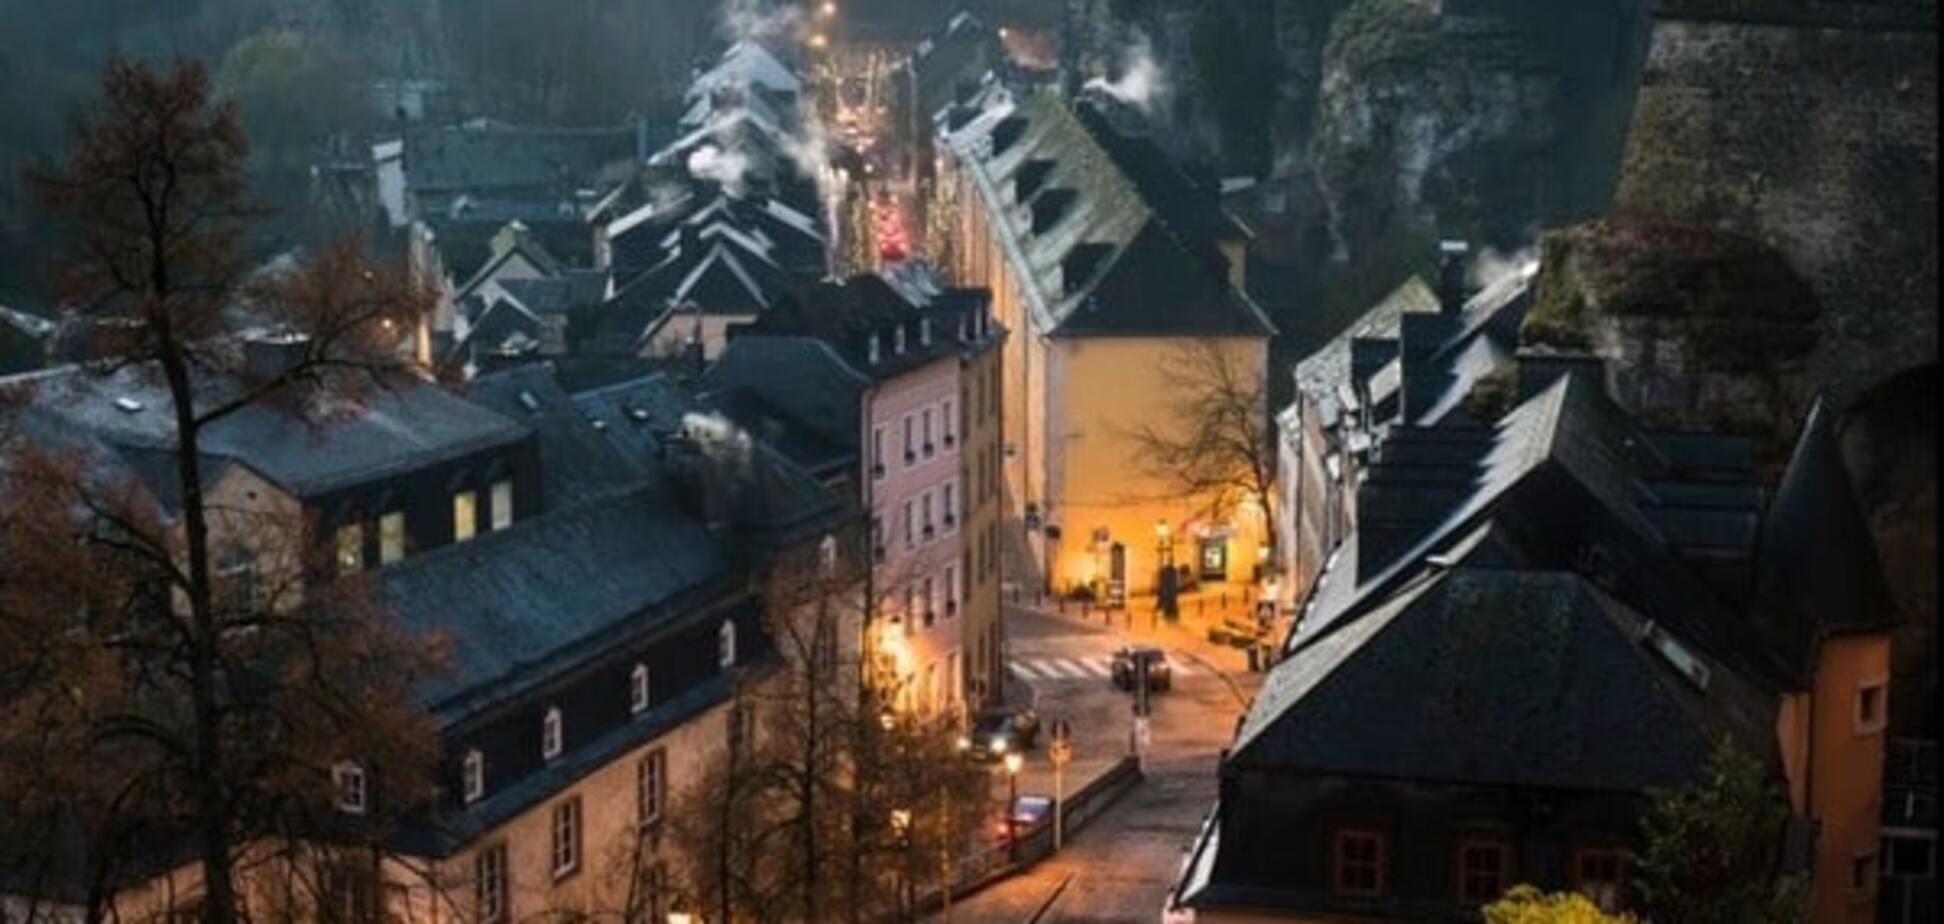 Чарующий Люксембург: яркие фото и интересные факты о прекрасном европейском городе